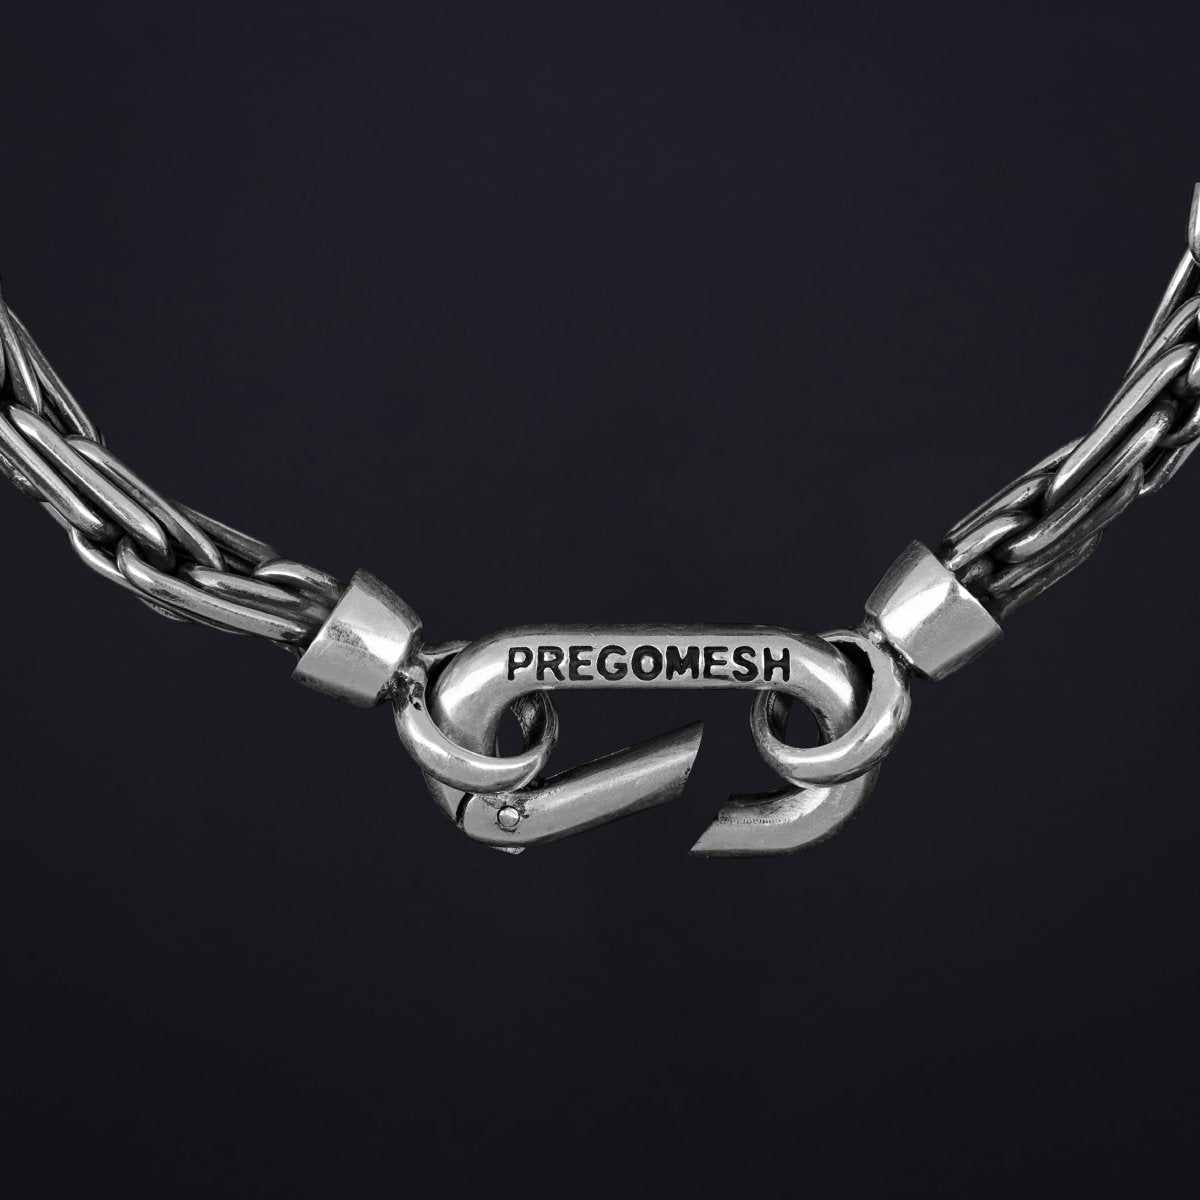 Bracelet "Biner" - Pregomesh